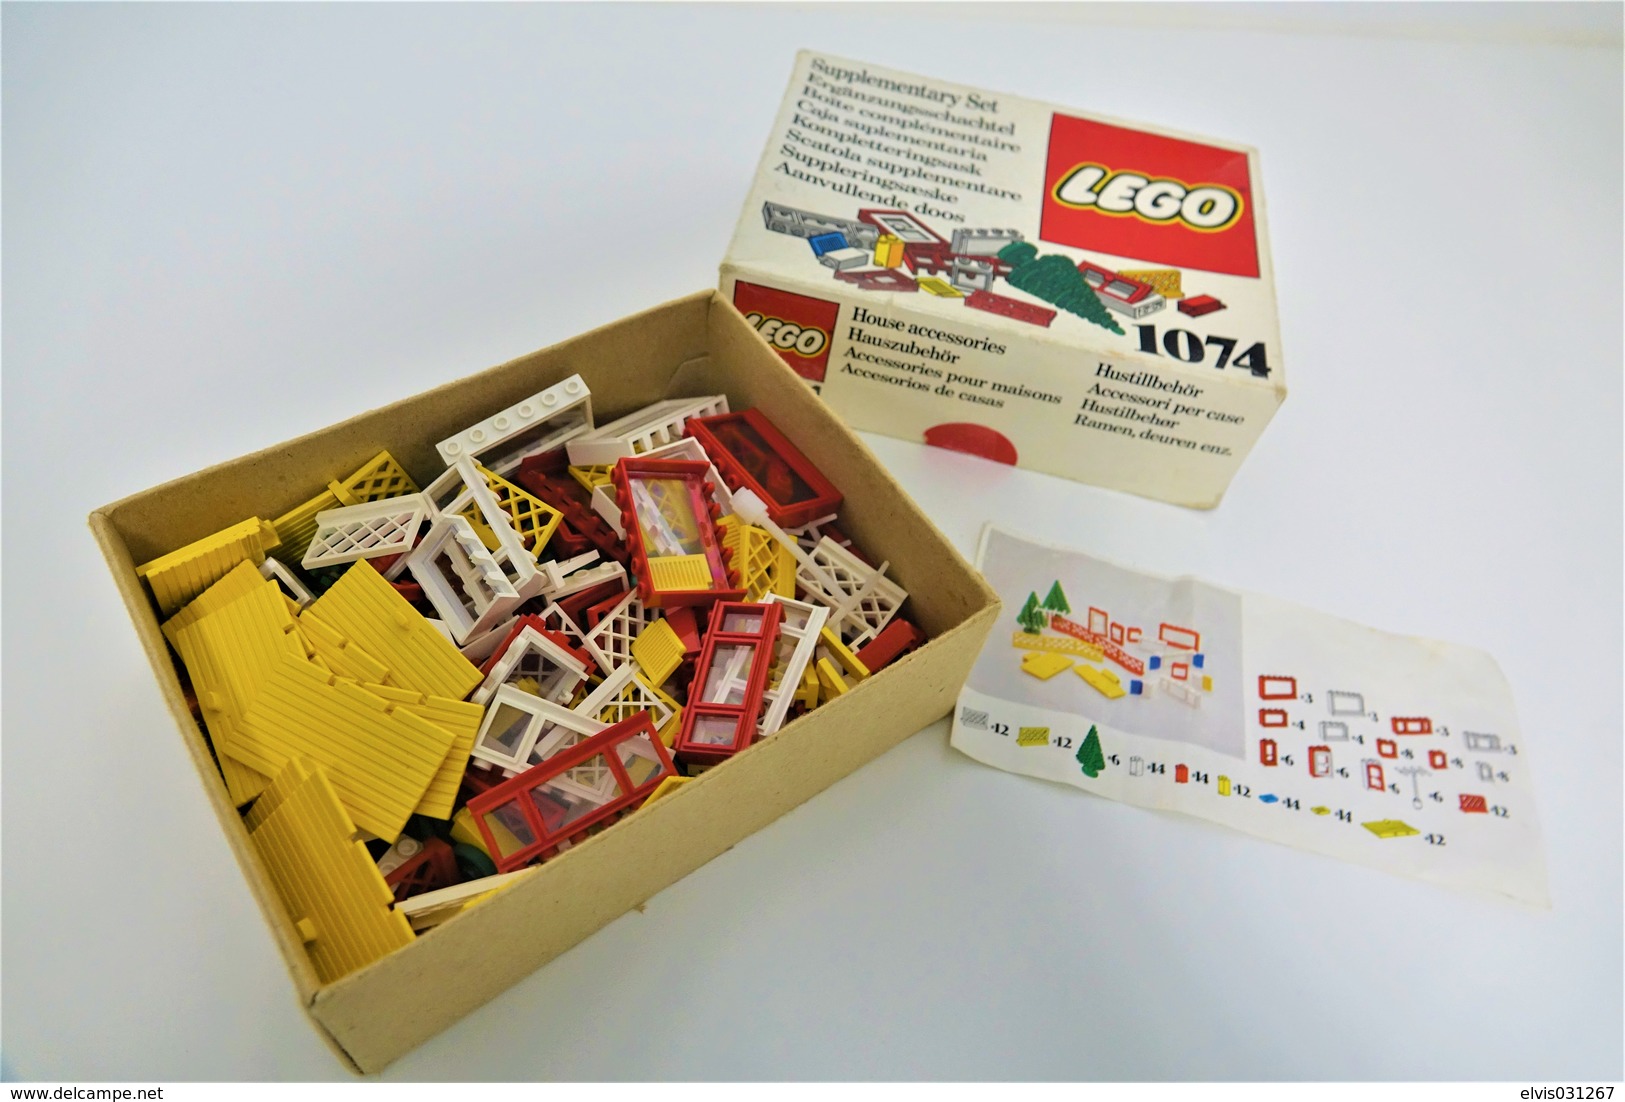 LEGO - 1074 Supplementary Box -very Rare - Original Box - Original Lego 1976 - Vintage - Catálogos